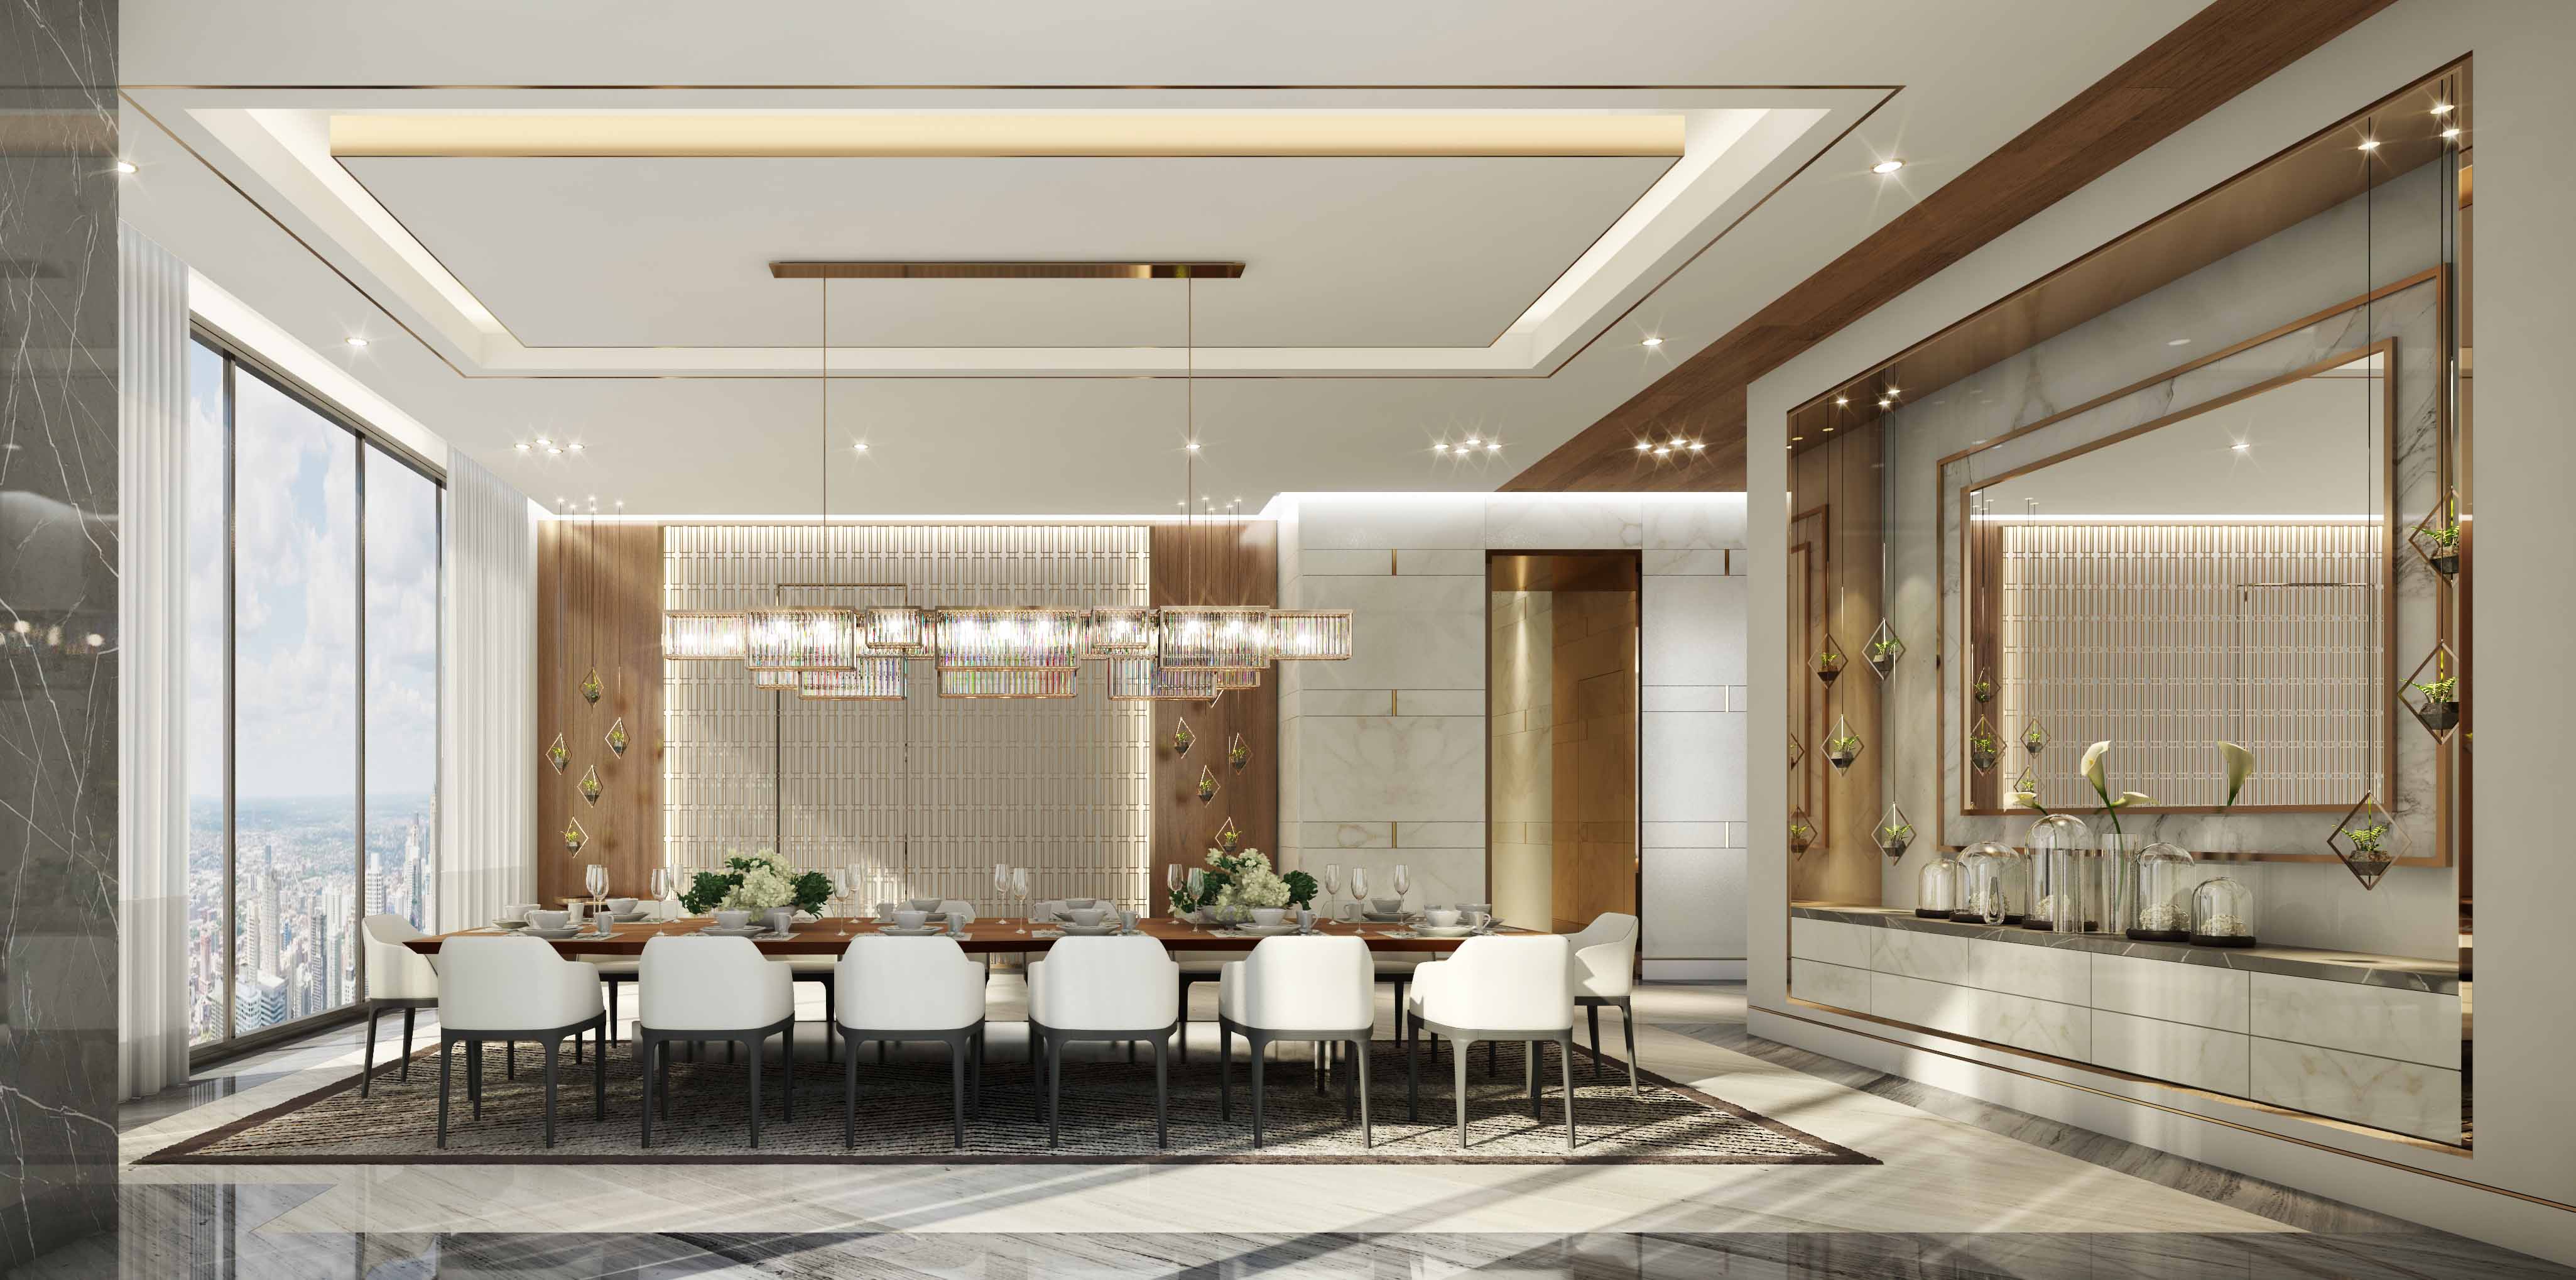 Al Habtoor Penthouses Swiss Bureau Interior Design Company